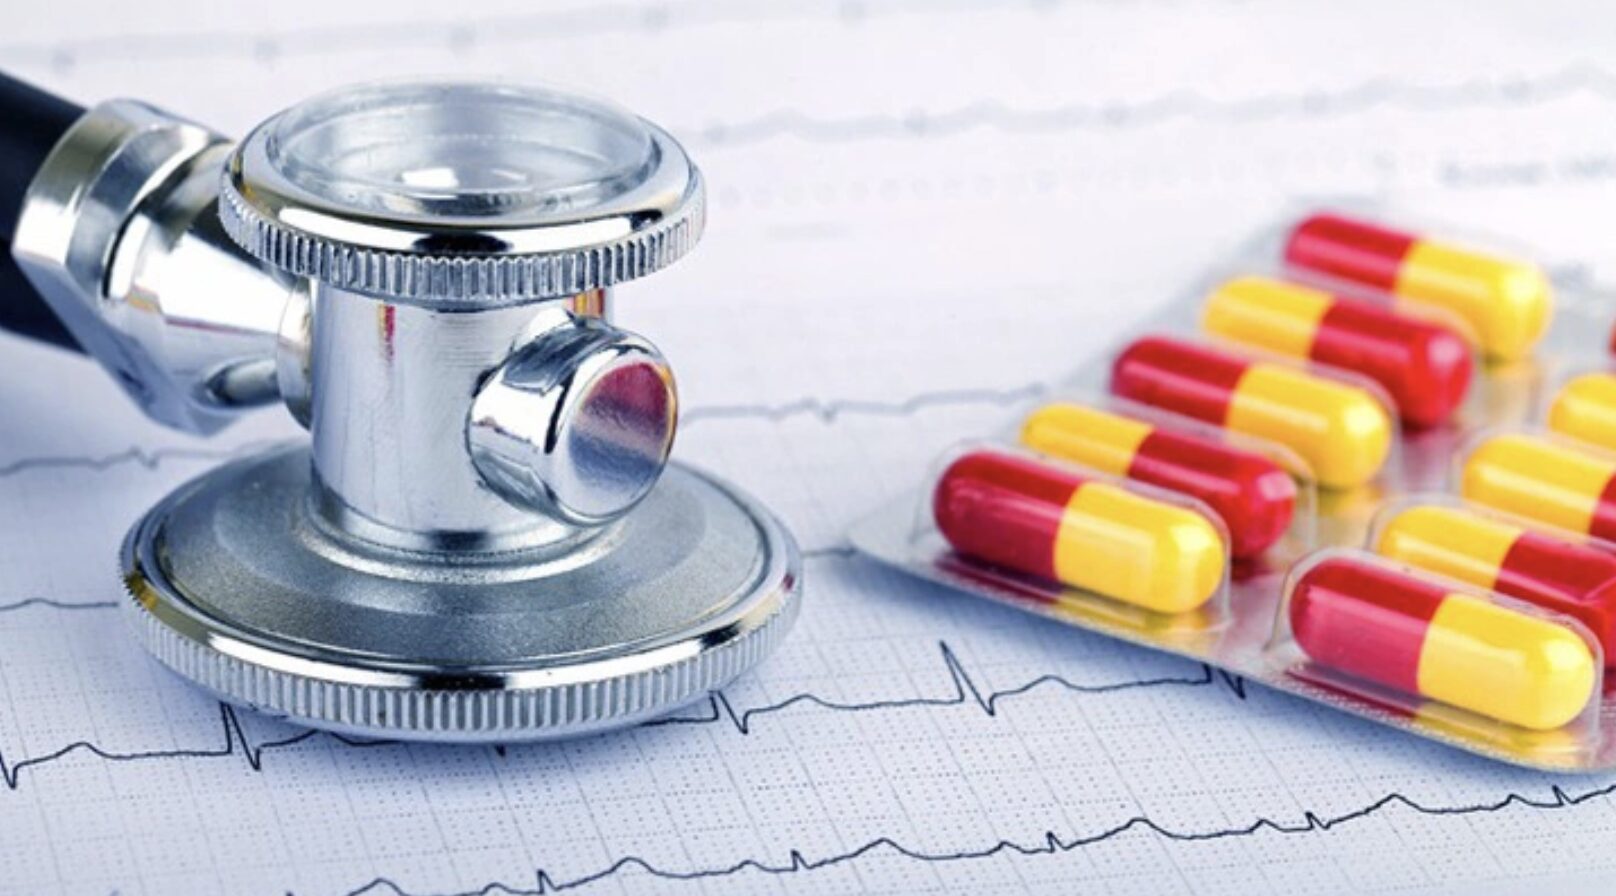 Thuốc Betaloc điều trị nhịp tim nhanh có dùng thường xuyên hàng ngày được không?